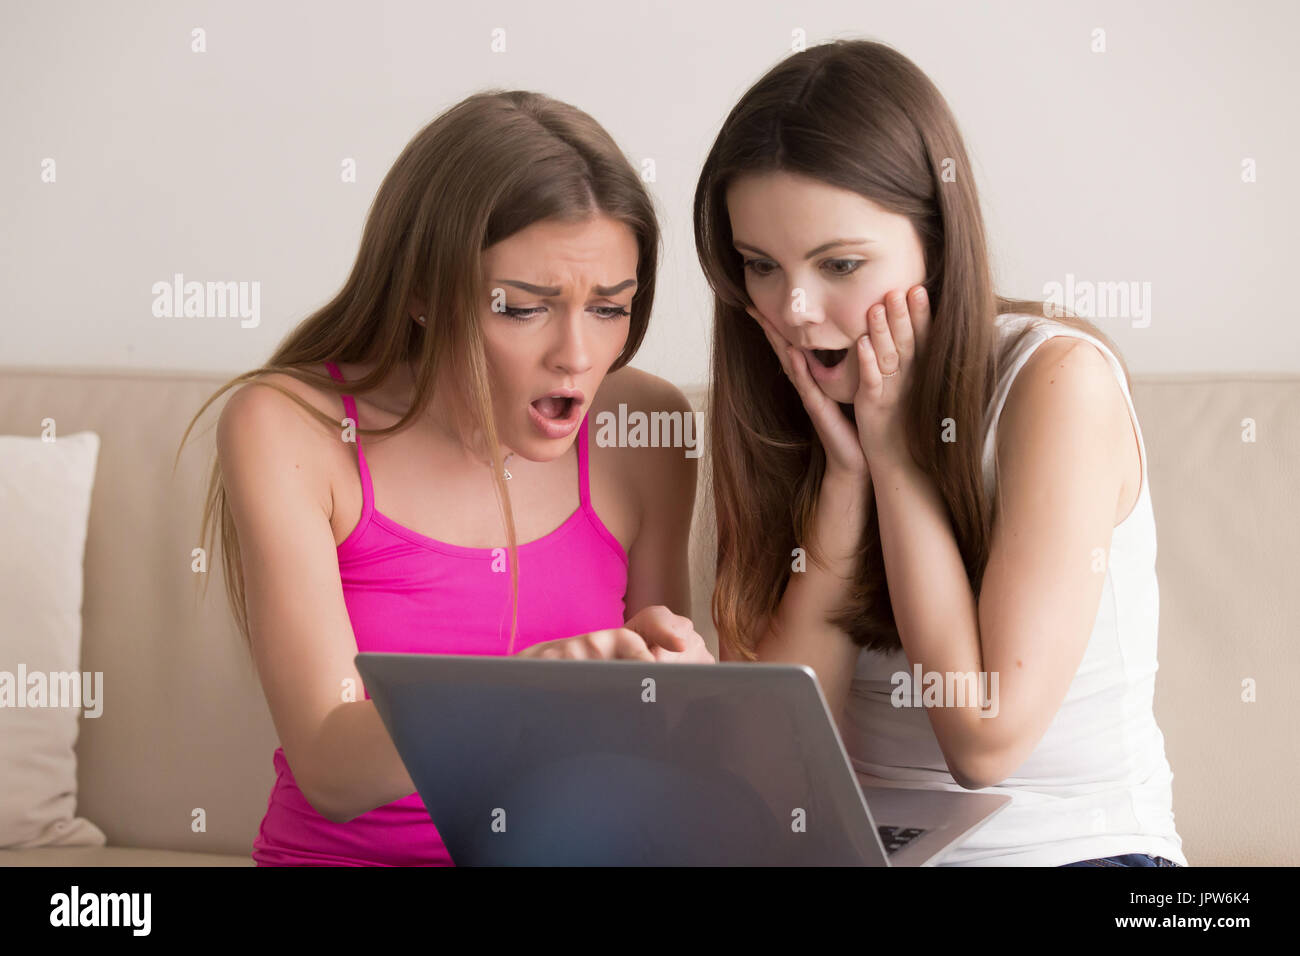 Los adolescentes entusiasmados con los bajos precios de venta on-line Foto de stock